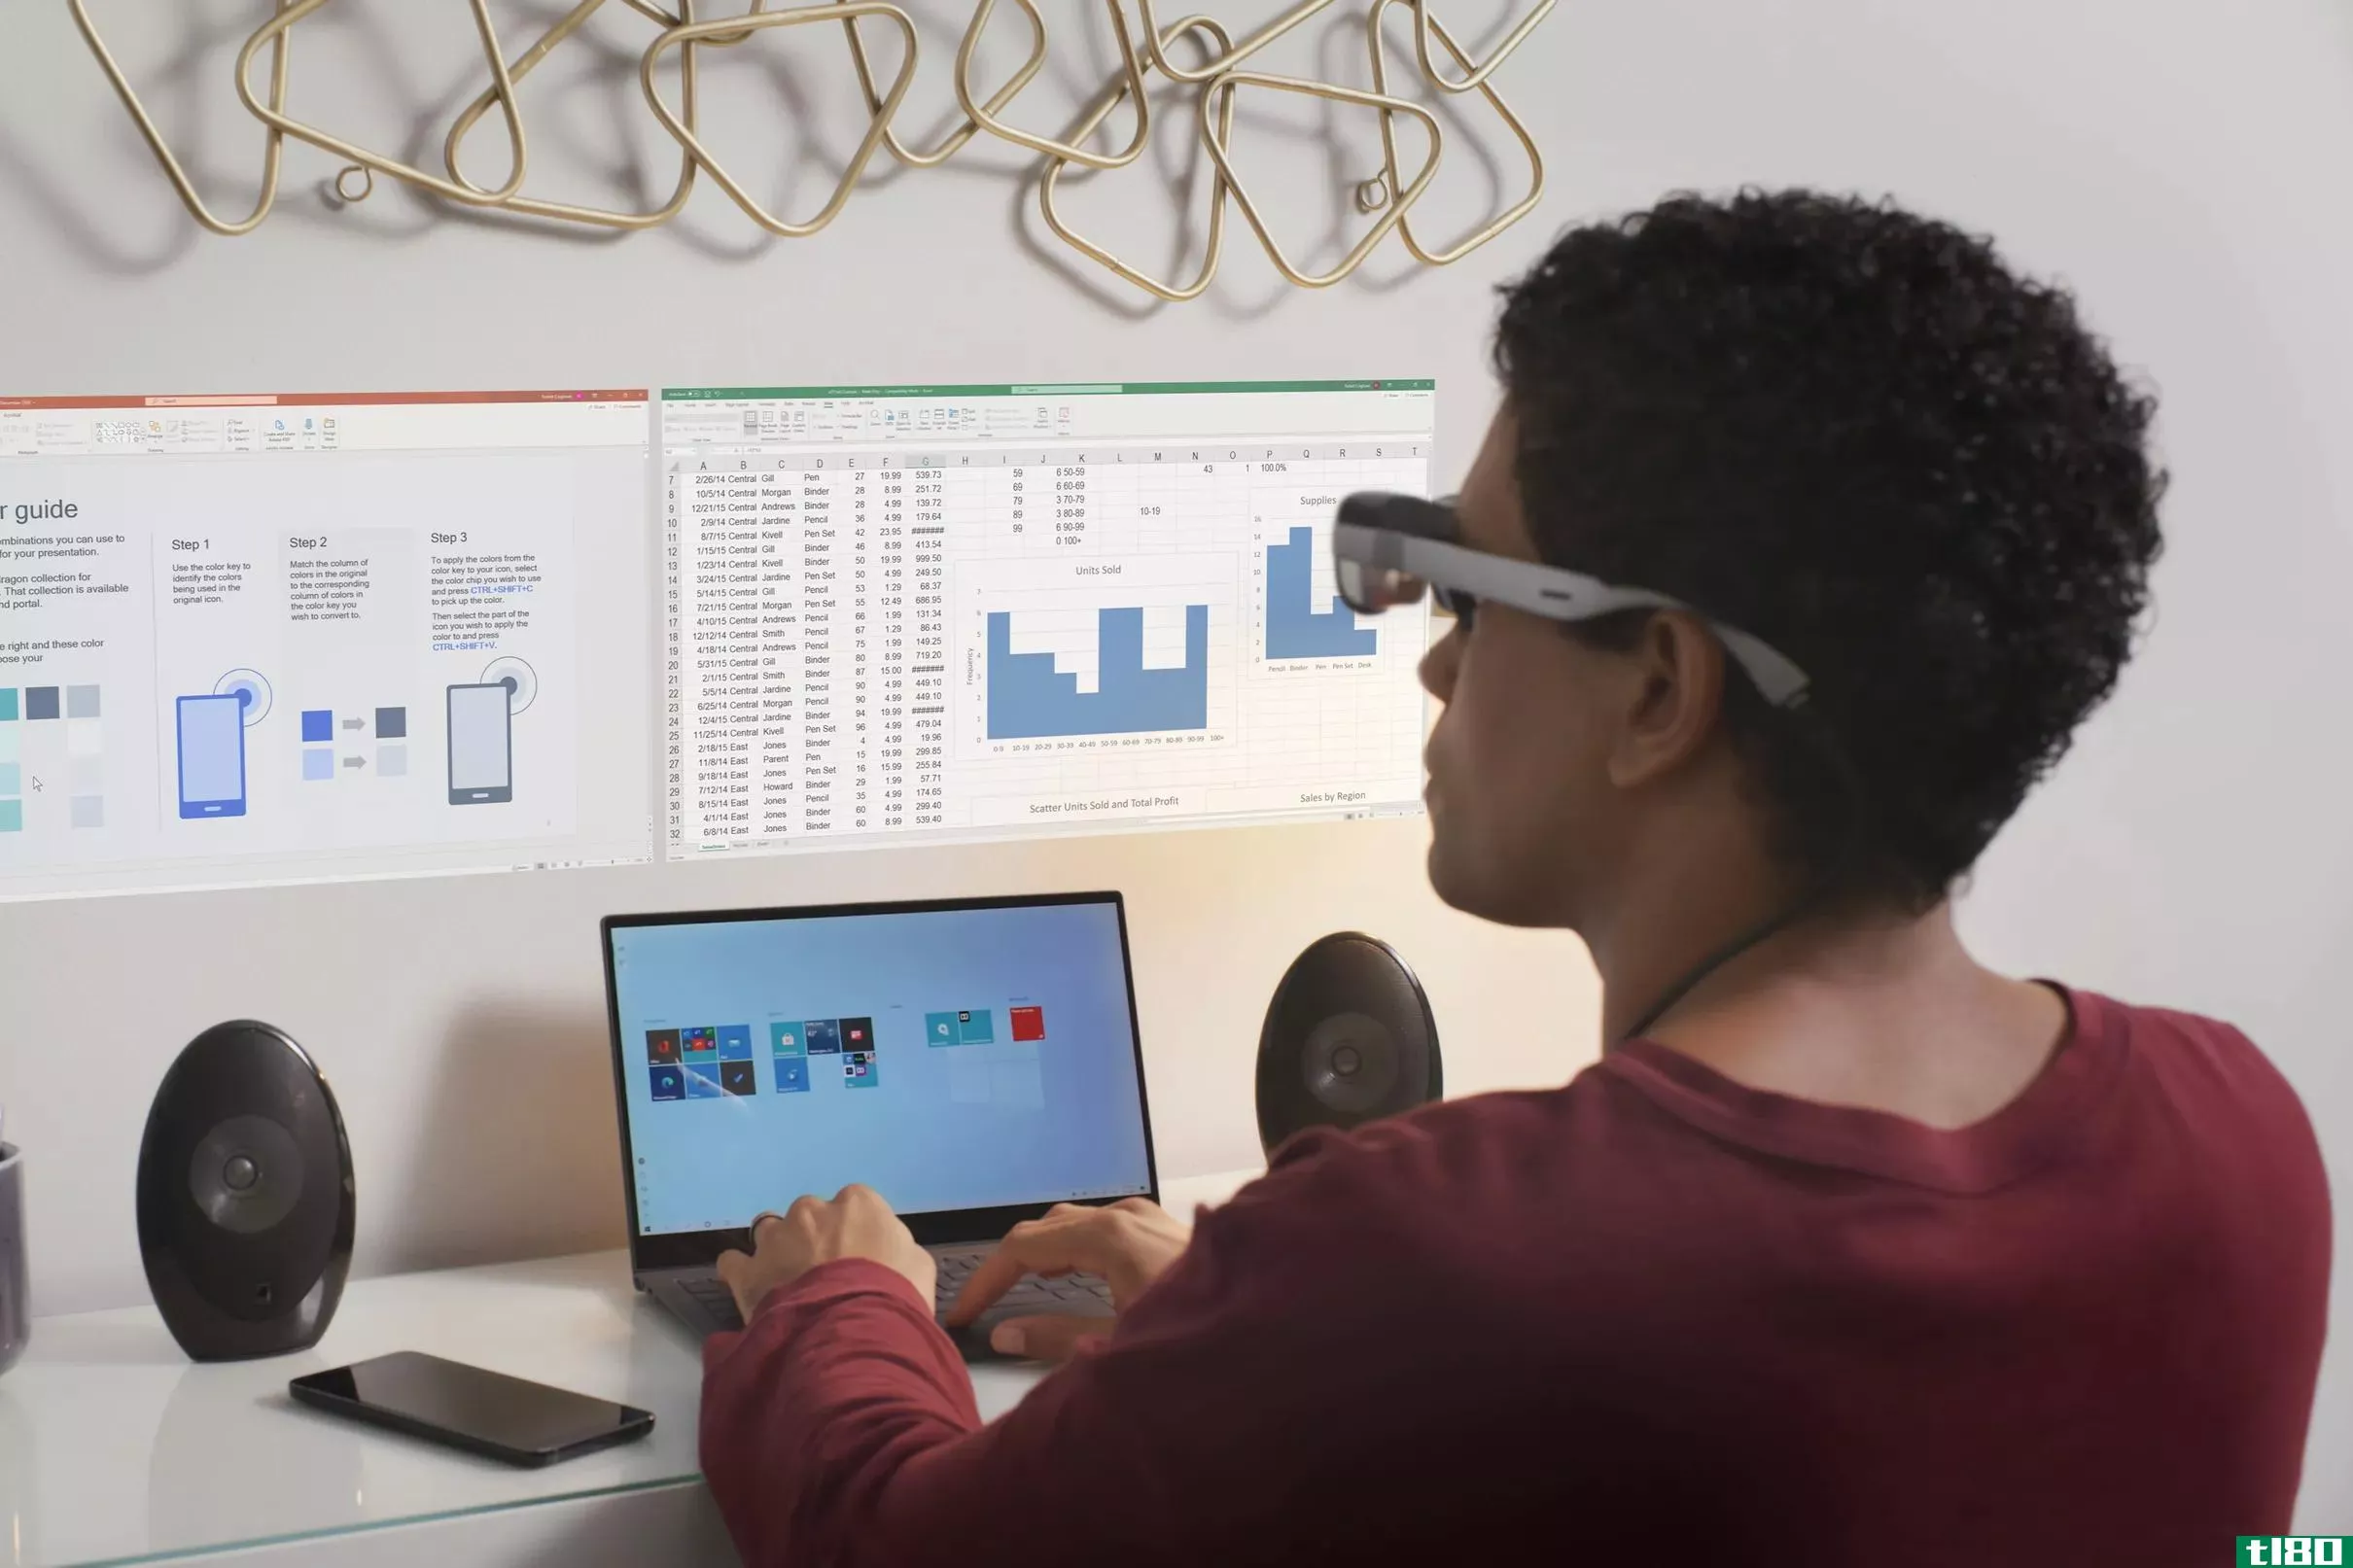 高通公司的新ar“智能查看器”允许您将虚拟屏幕固定到墙上